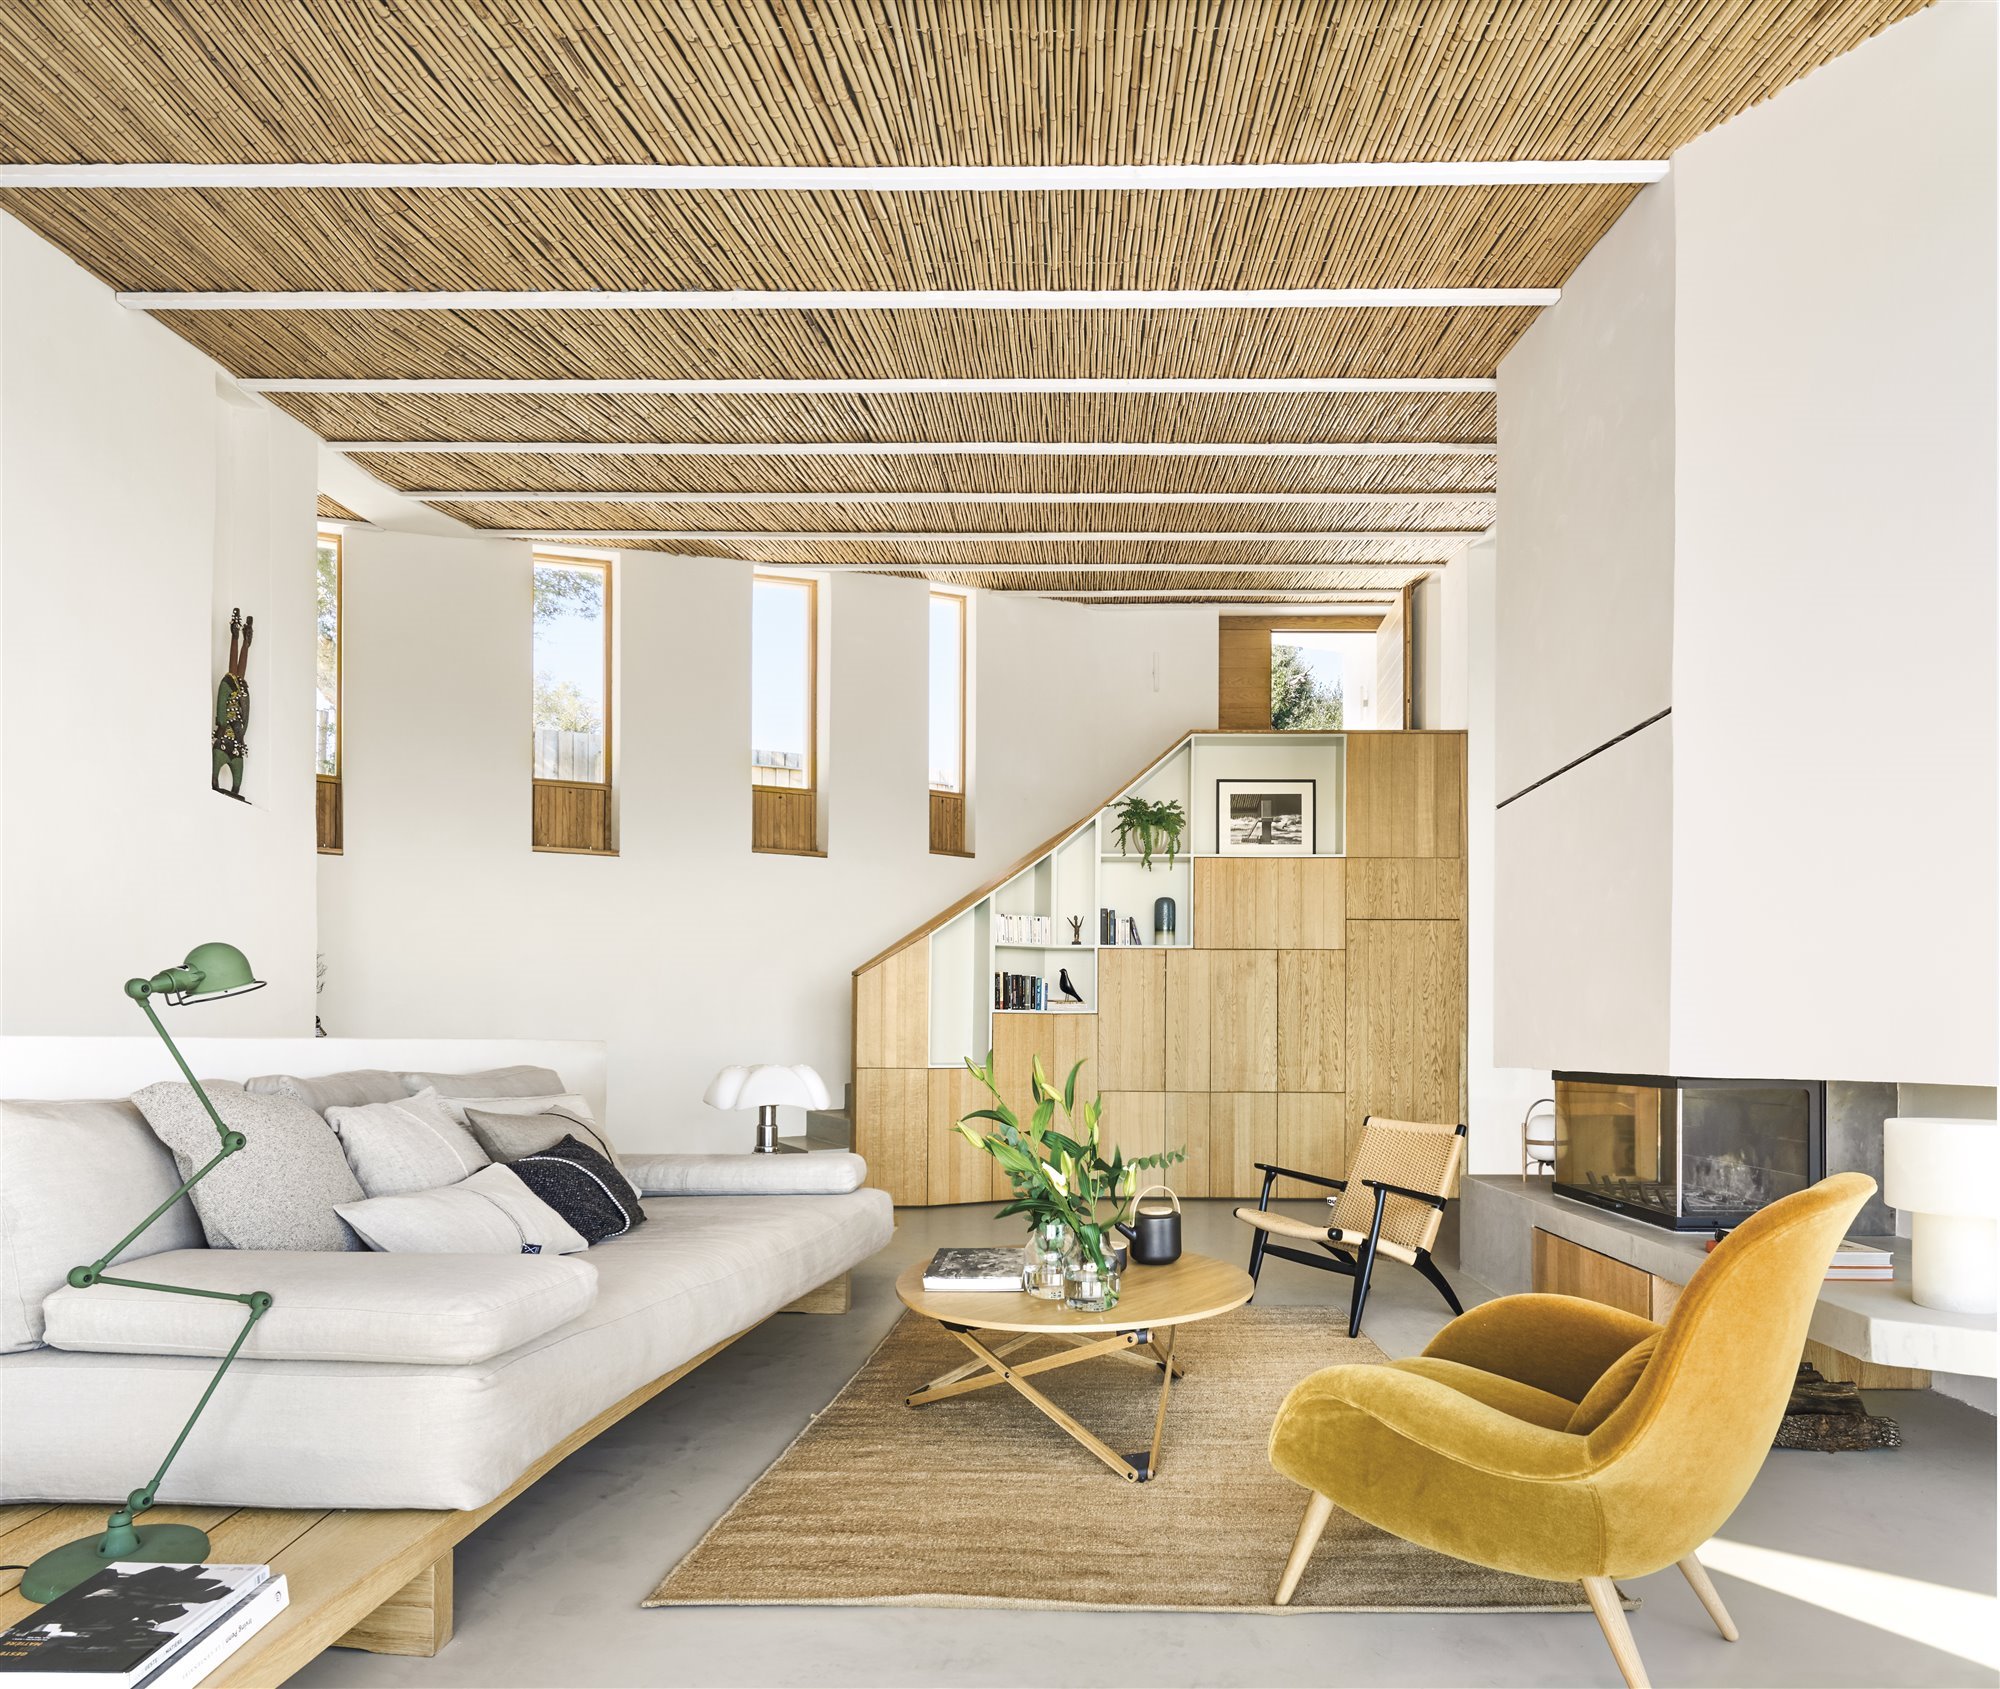 Salon de una casa moderna con techos de fibras naturales y sofá blanco